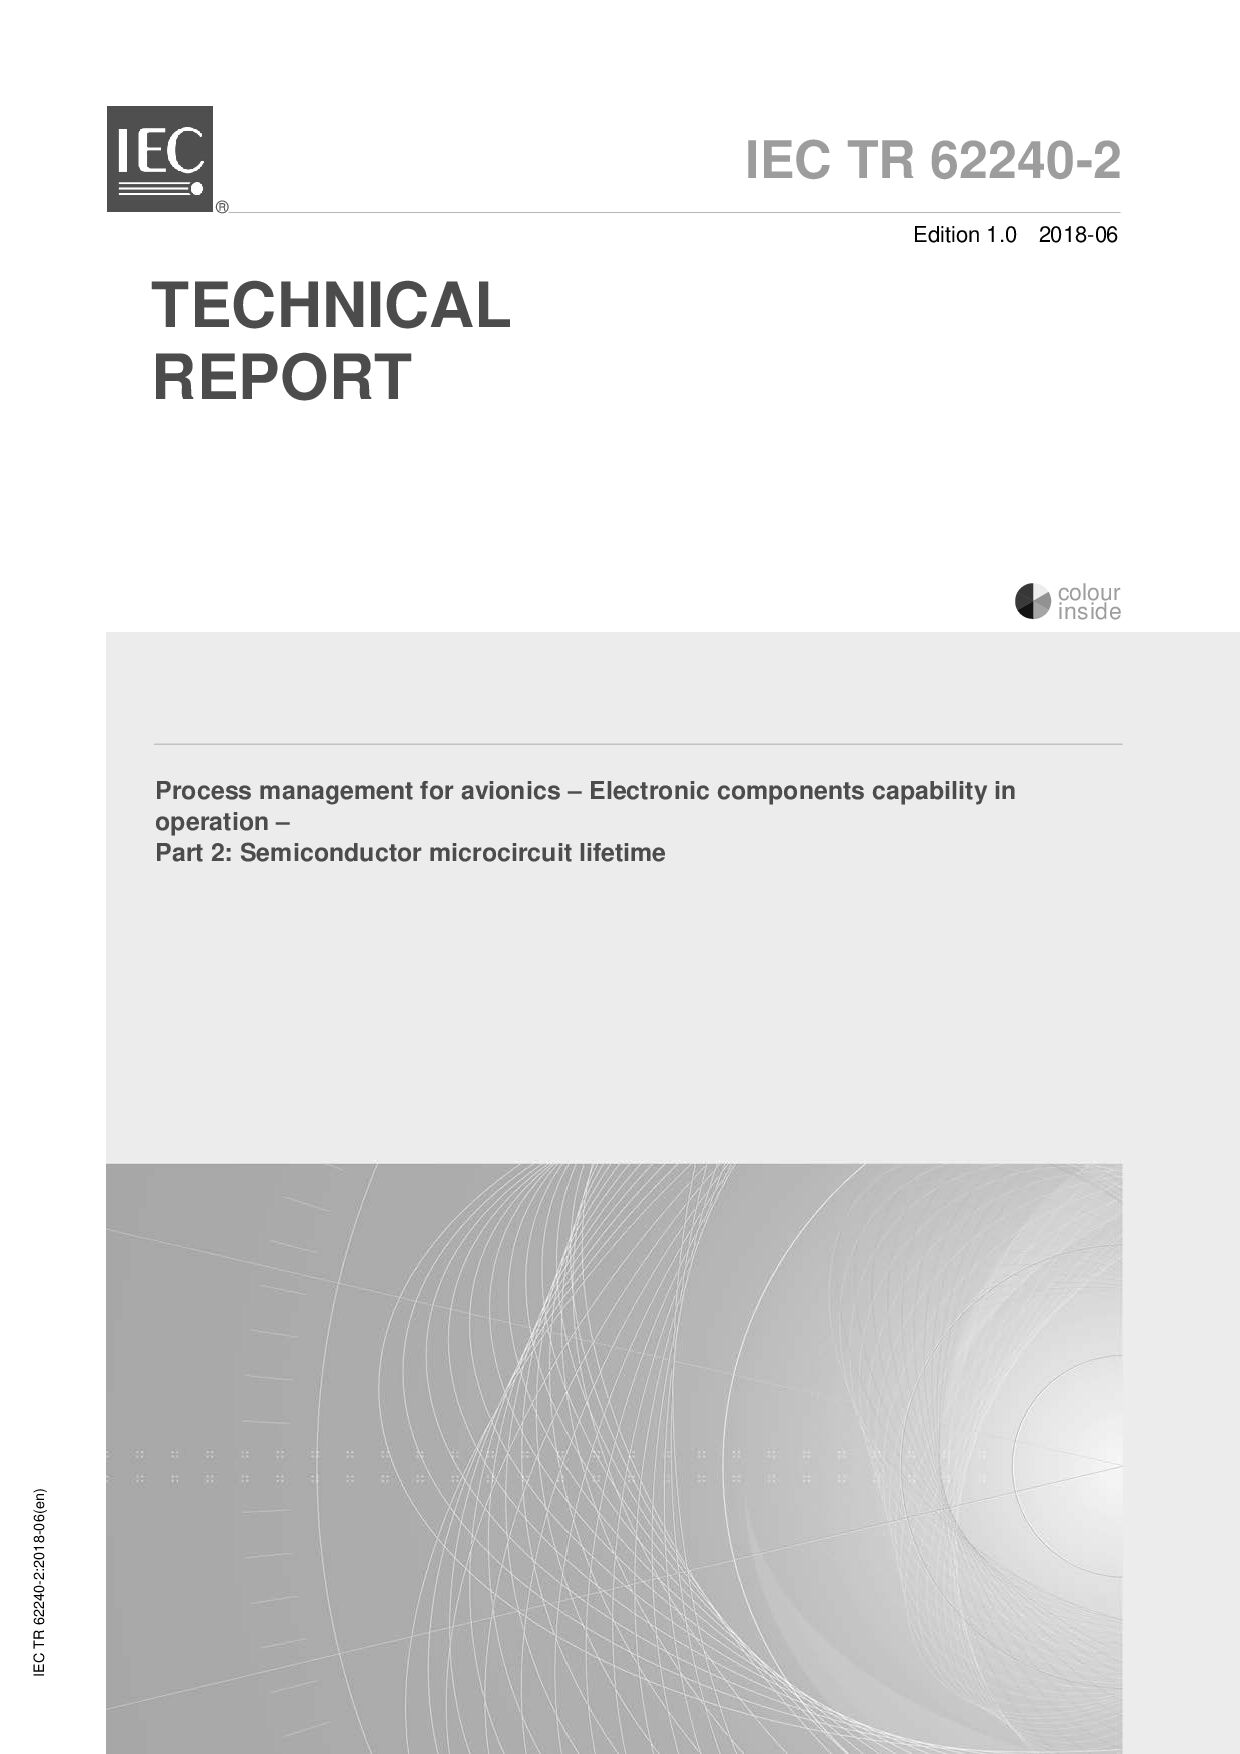 IEC TR 62240-2:2018